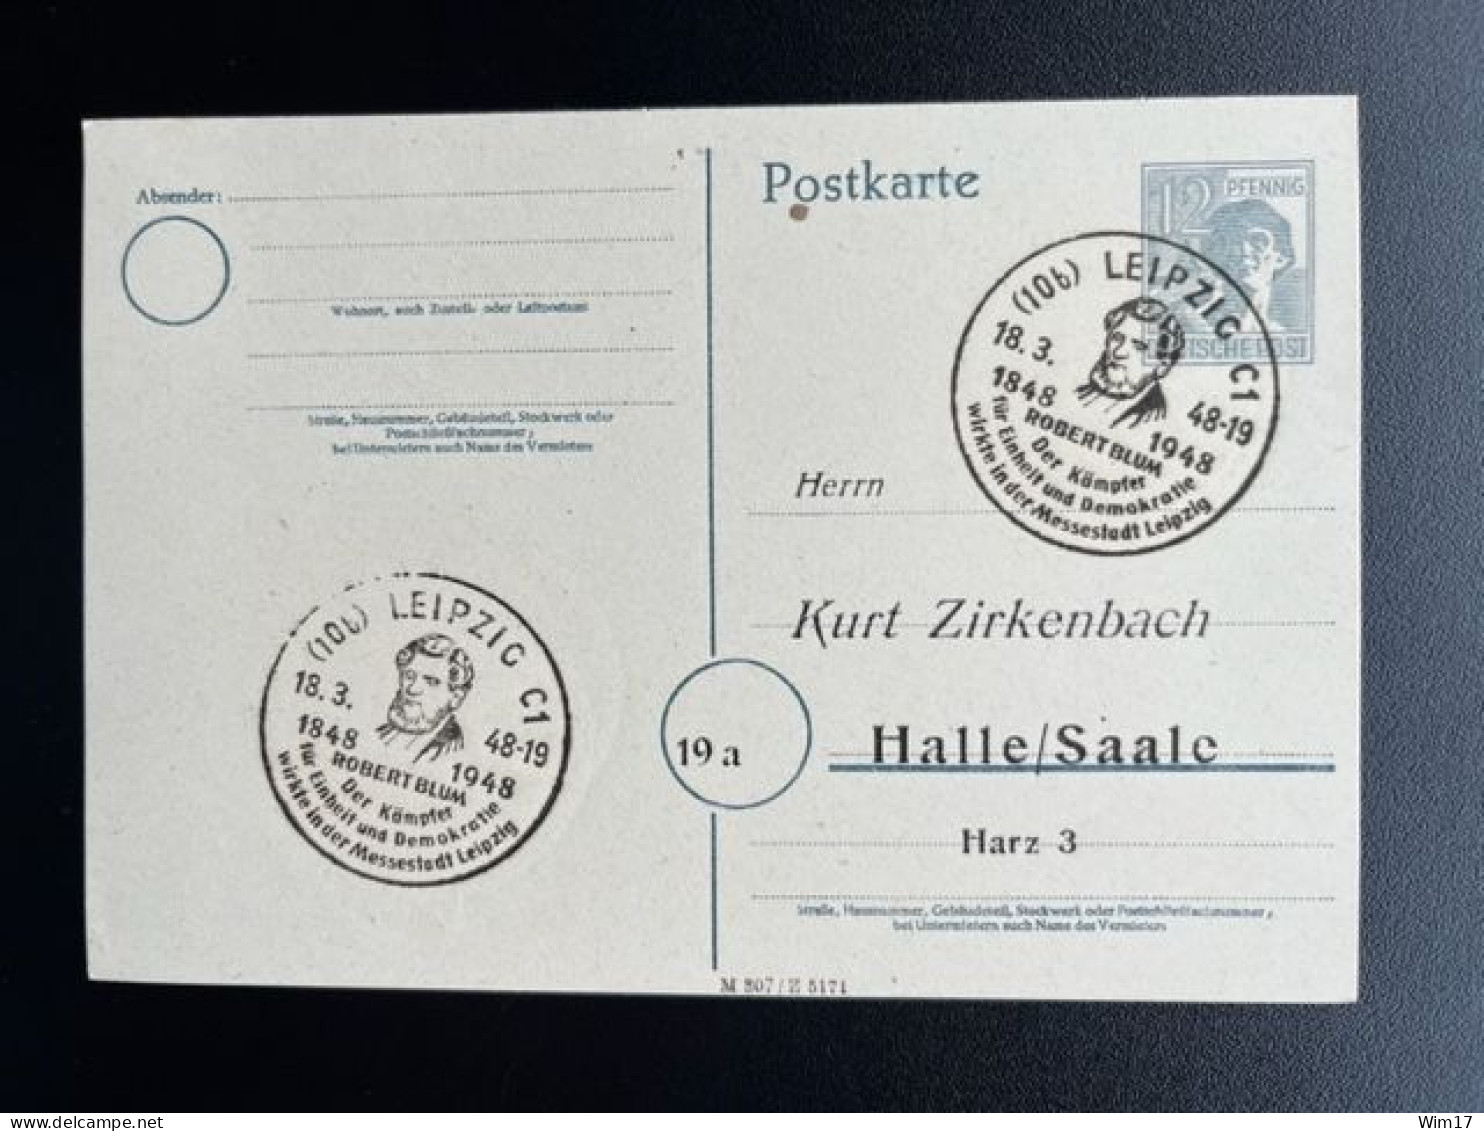 GERMANY 1948 POSTCARD LEIPZIG TO HALLE 18-03-1948 DUITSLAND DEUTSCHLAND SST ROBERT BLUM - Entiers Postaux